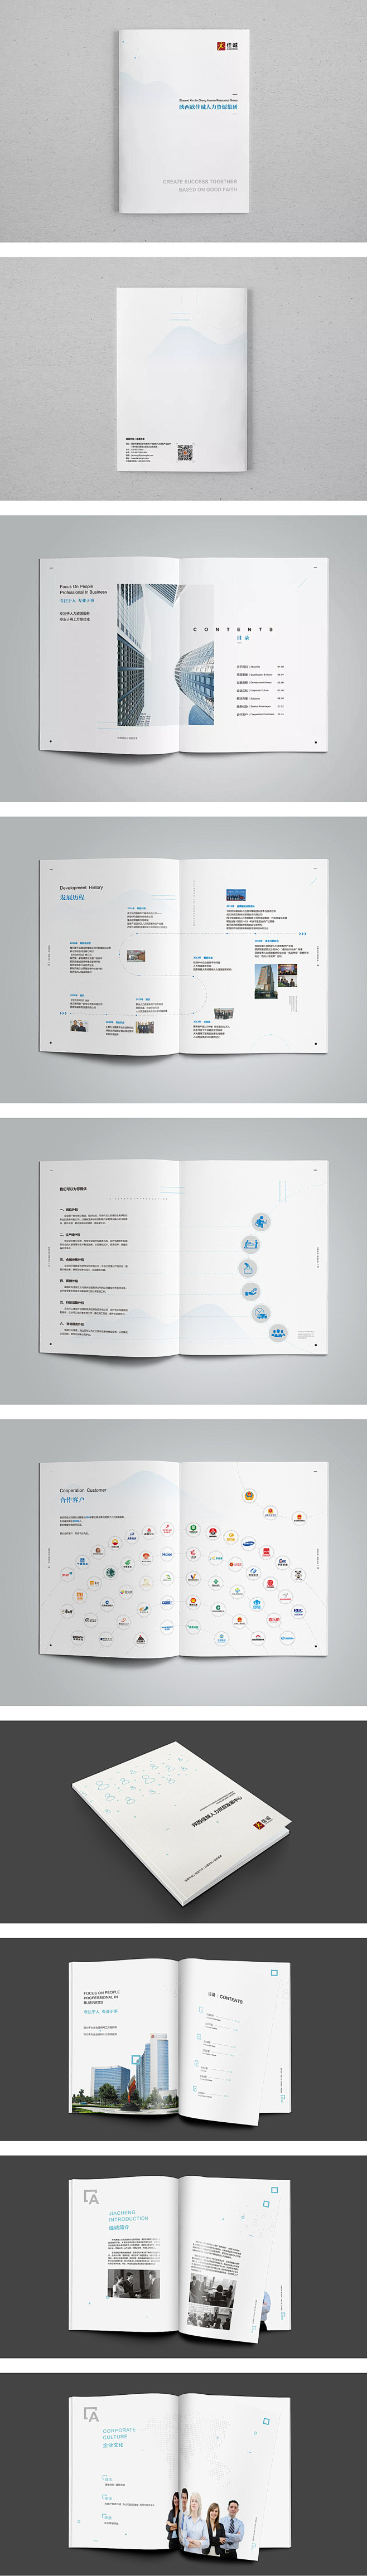 简洁人力资源画册设计